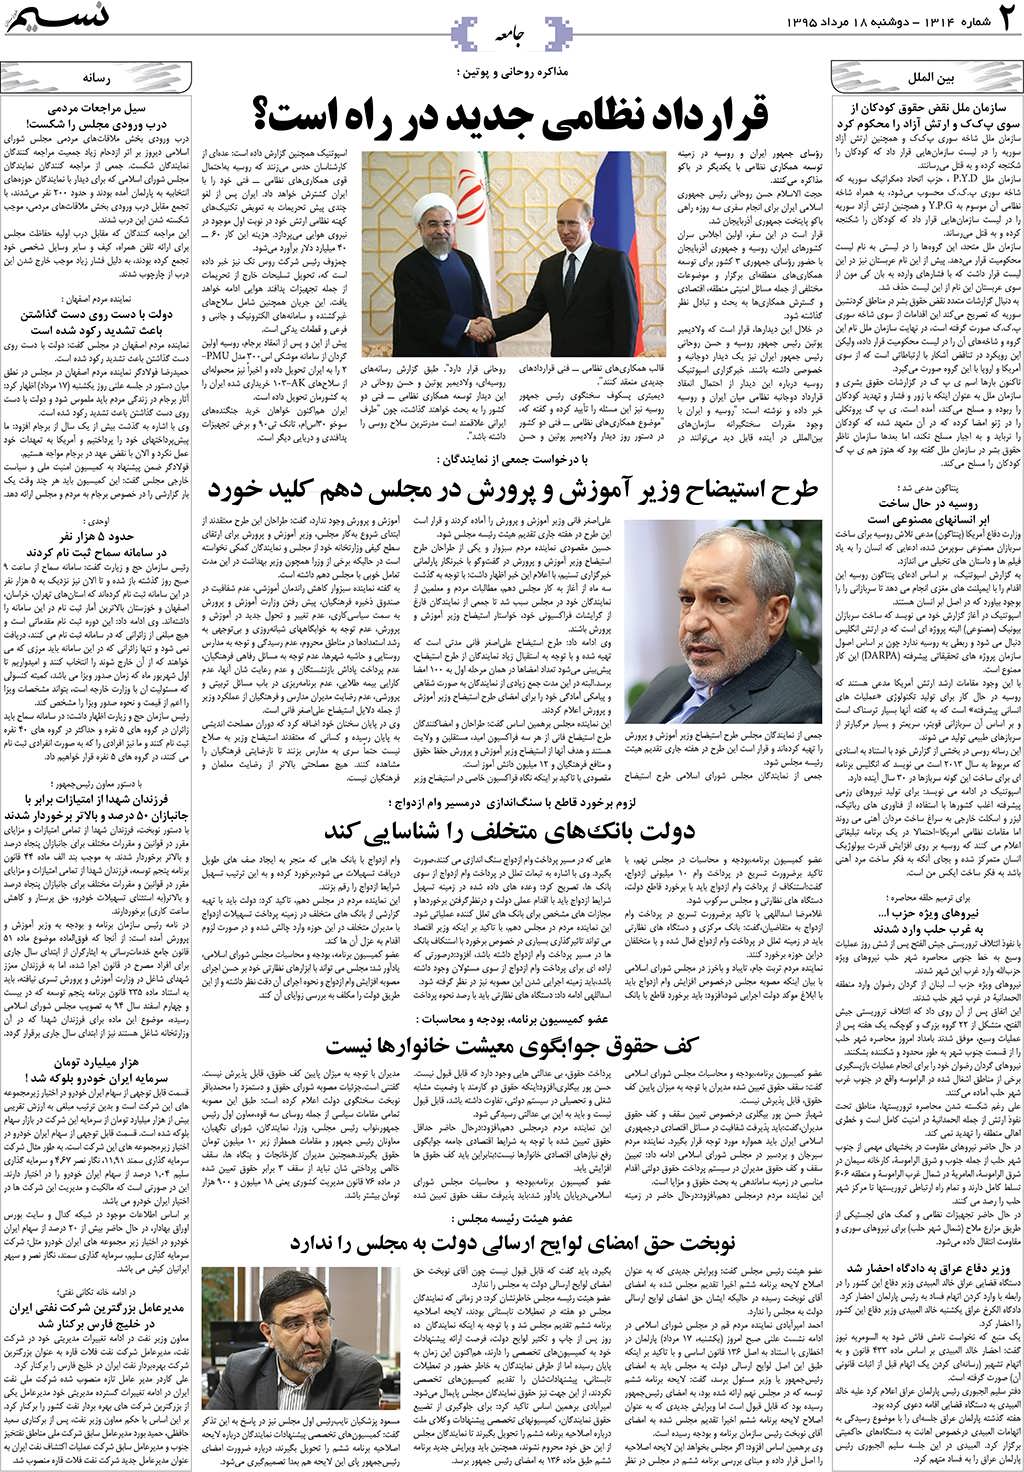 صفحه جامعه روزنامه نسیم شماره 1314